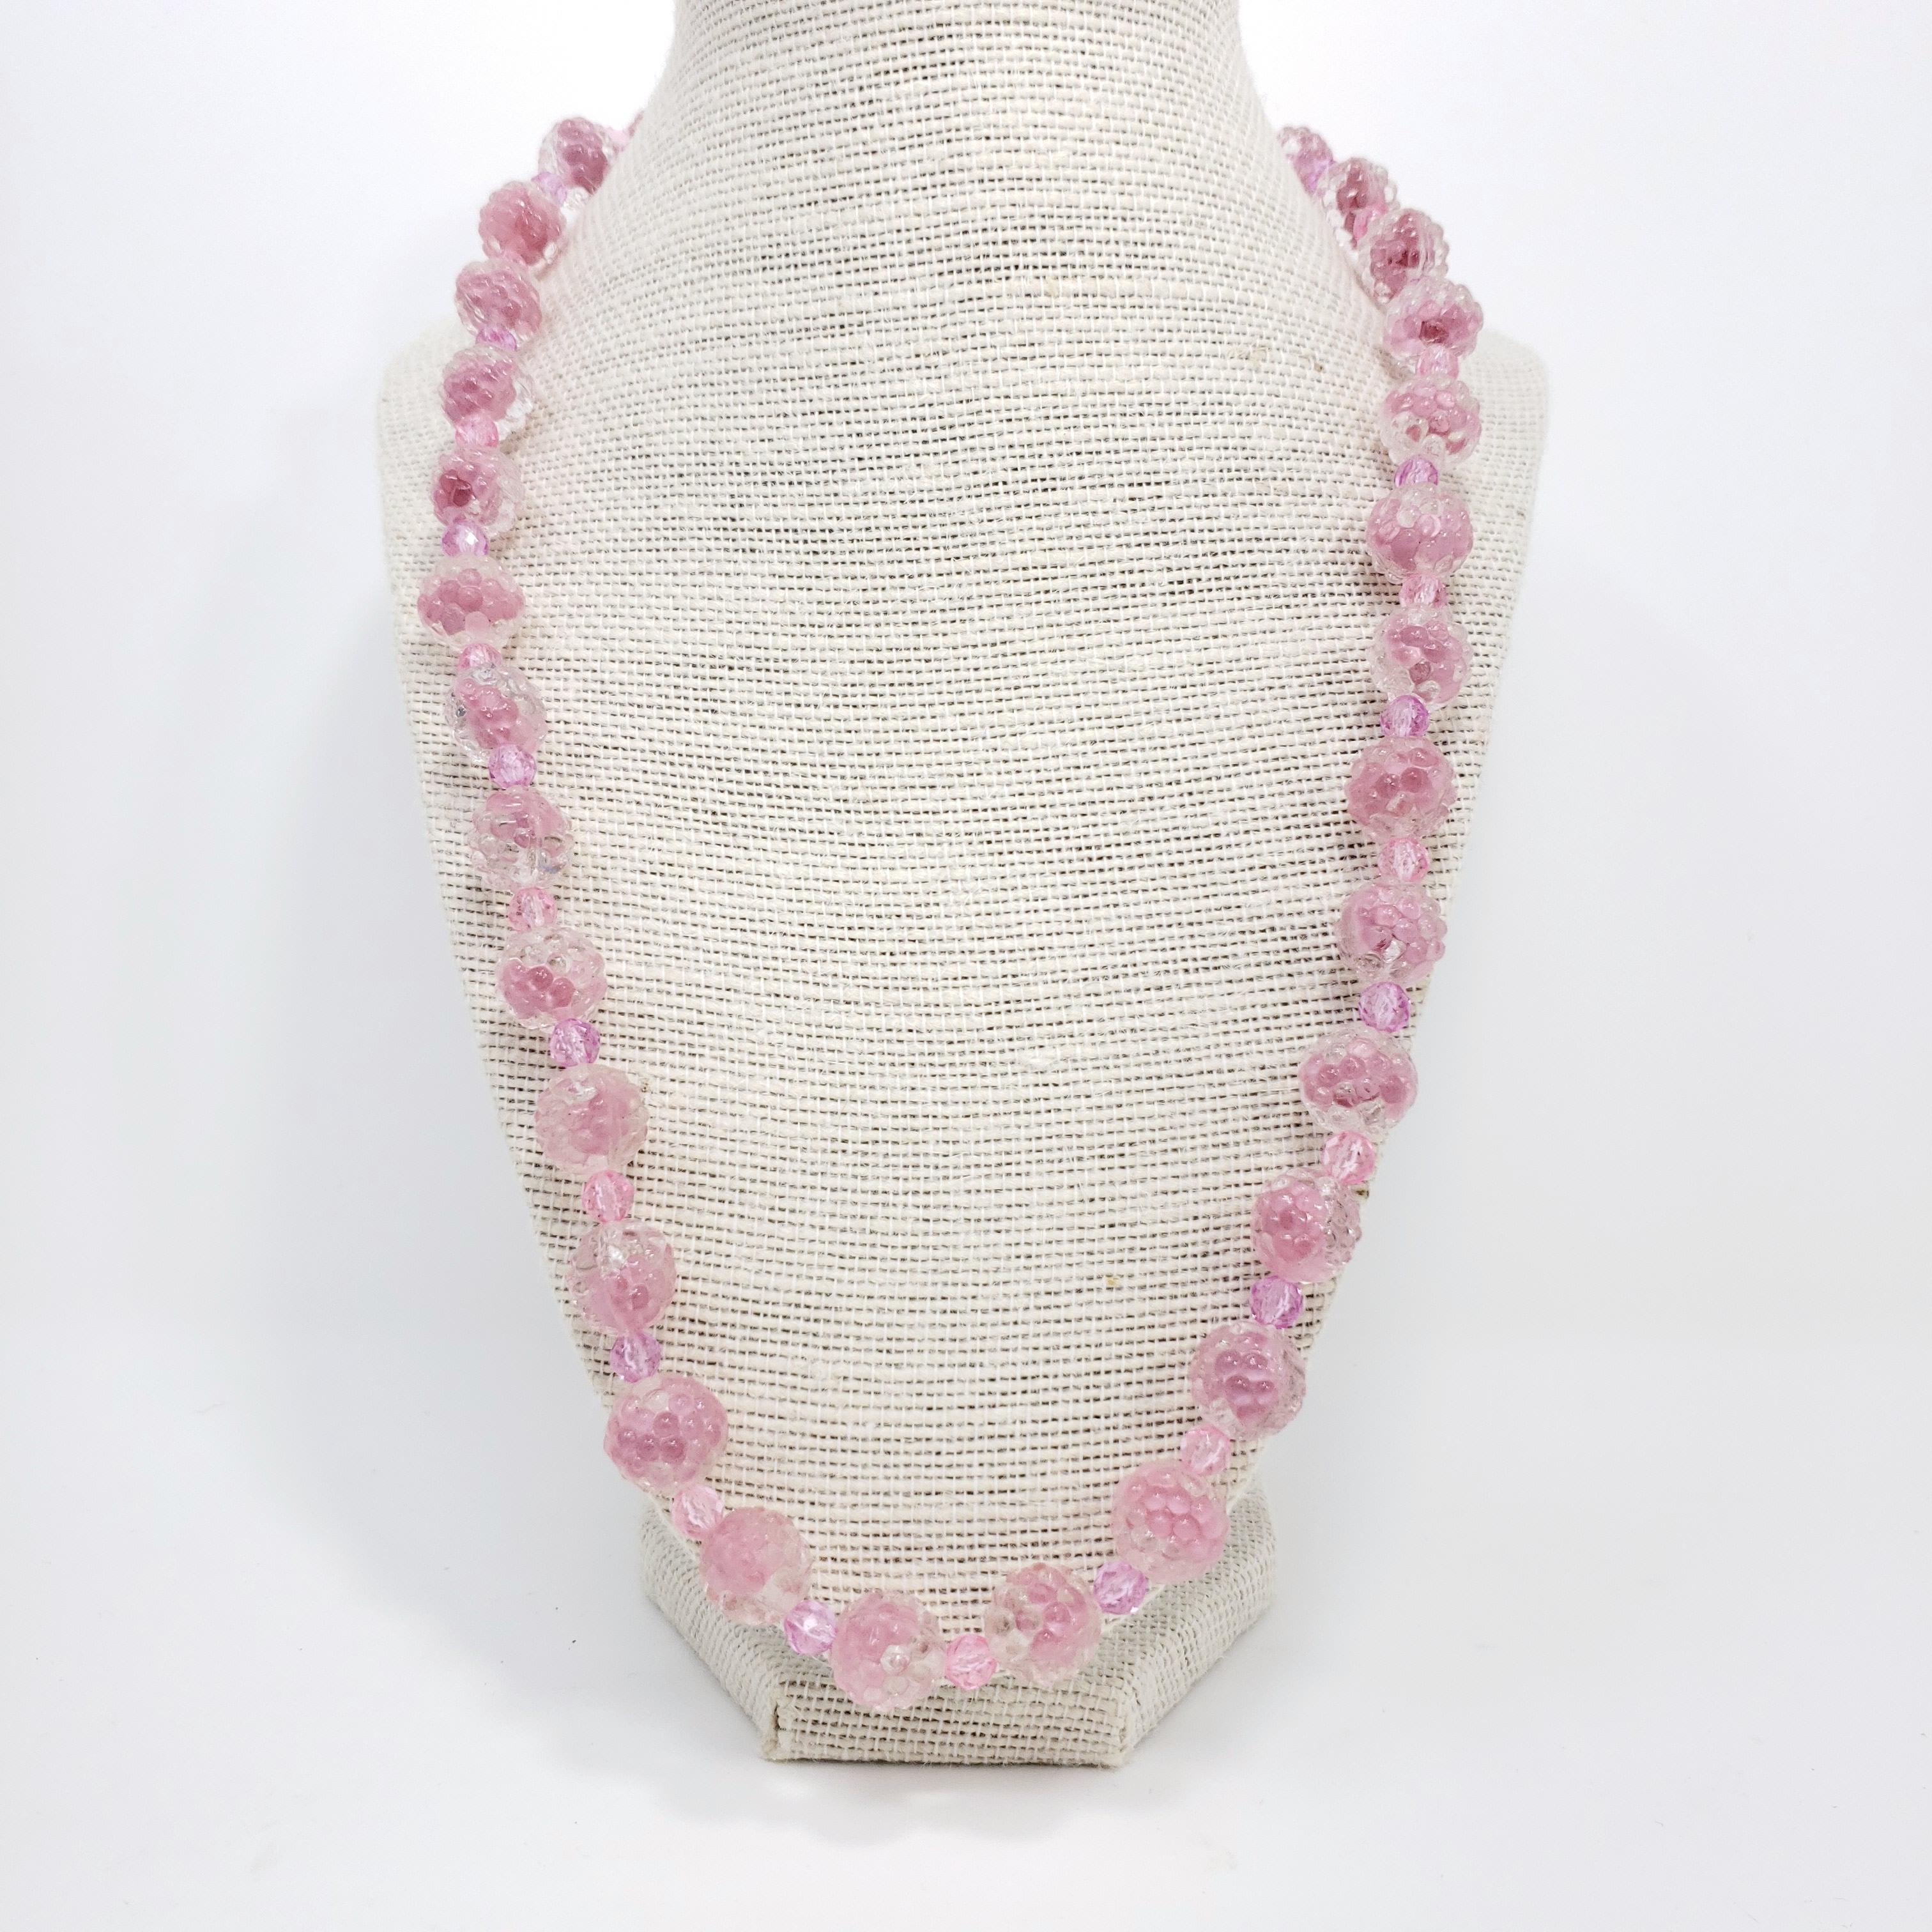 Collier en cristal rose et clair sculpté pour une touche de glamour rétro !

Fermoir à ressort en laiton.